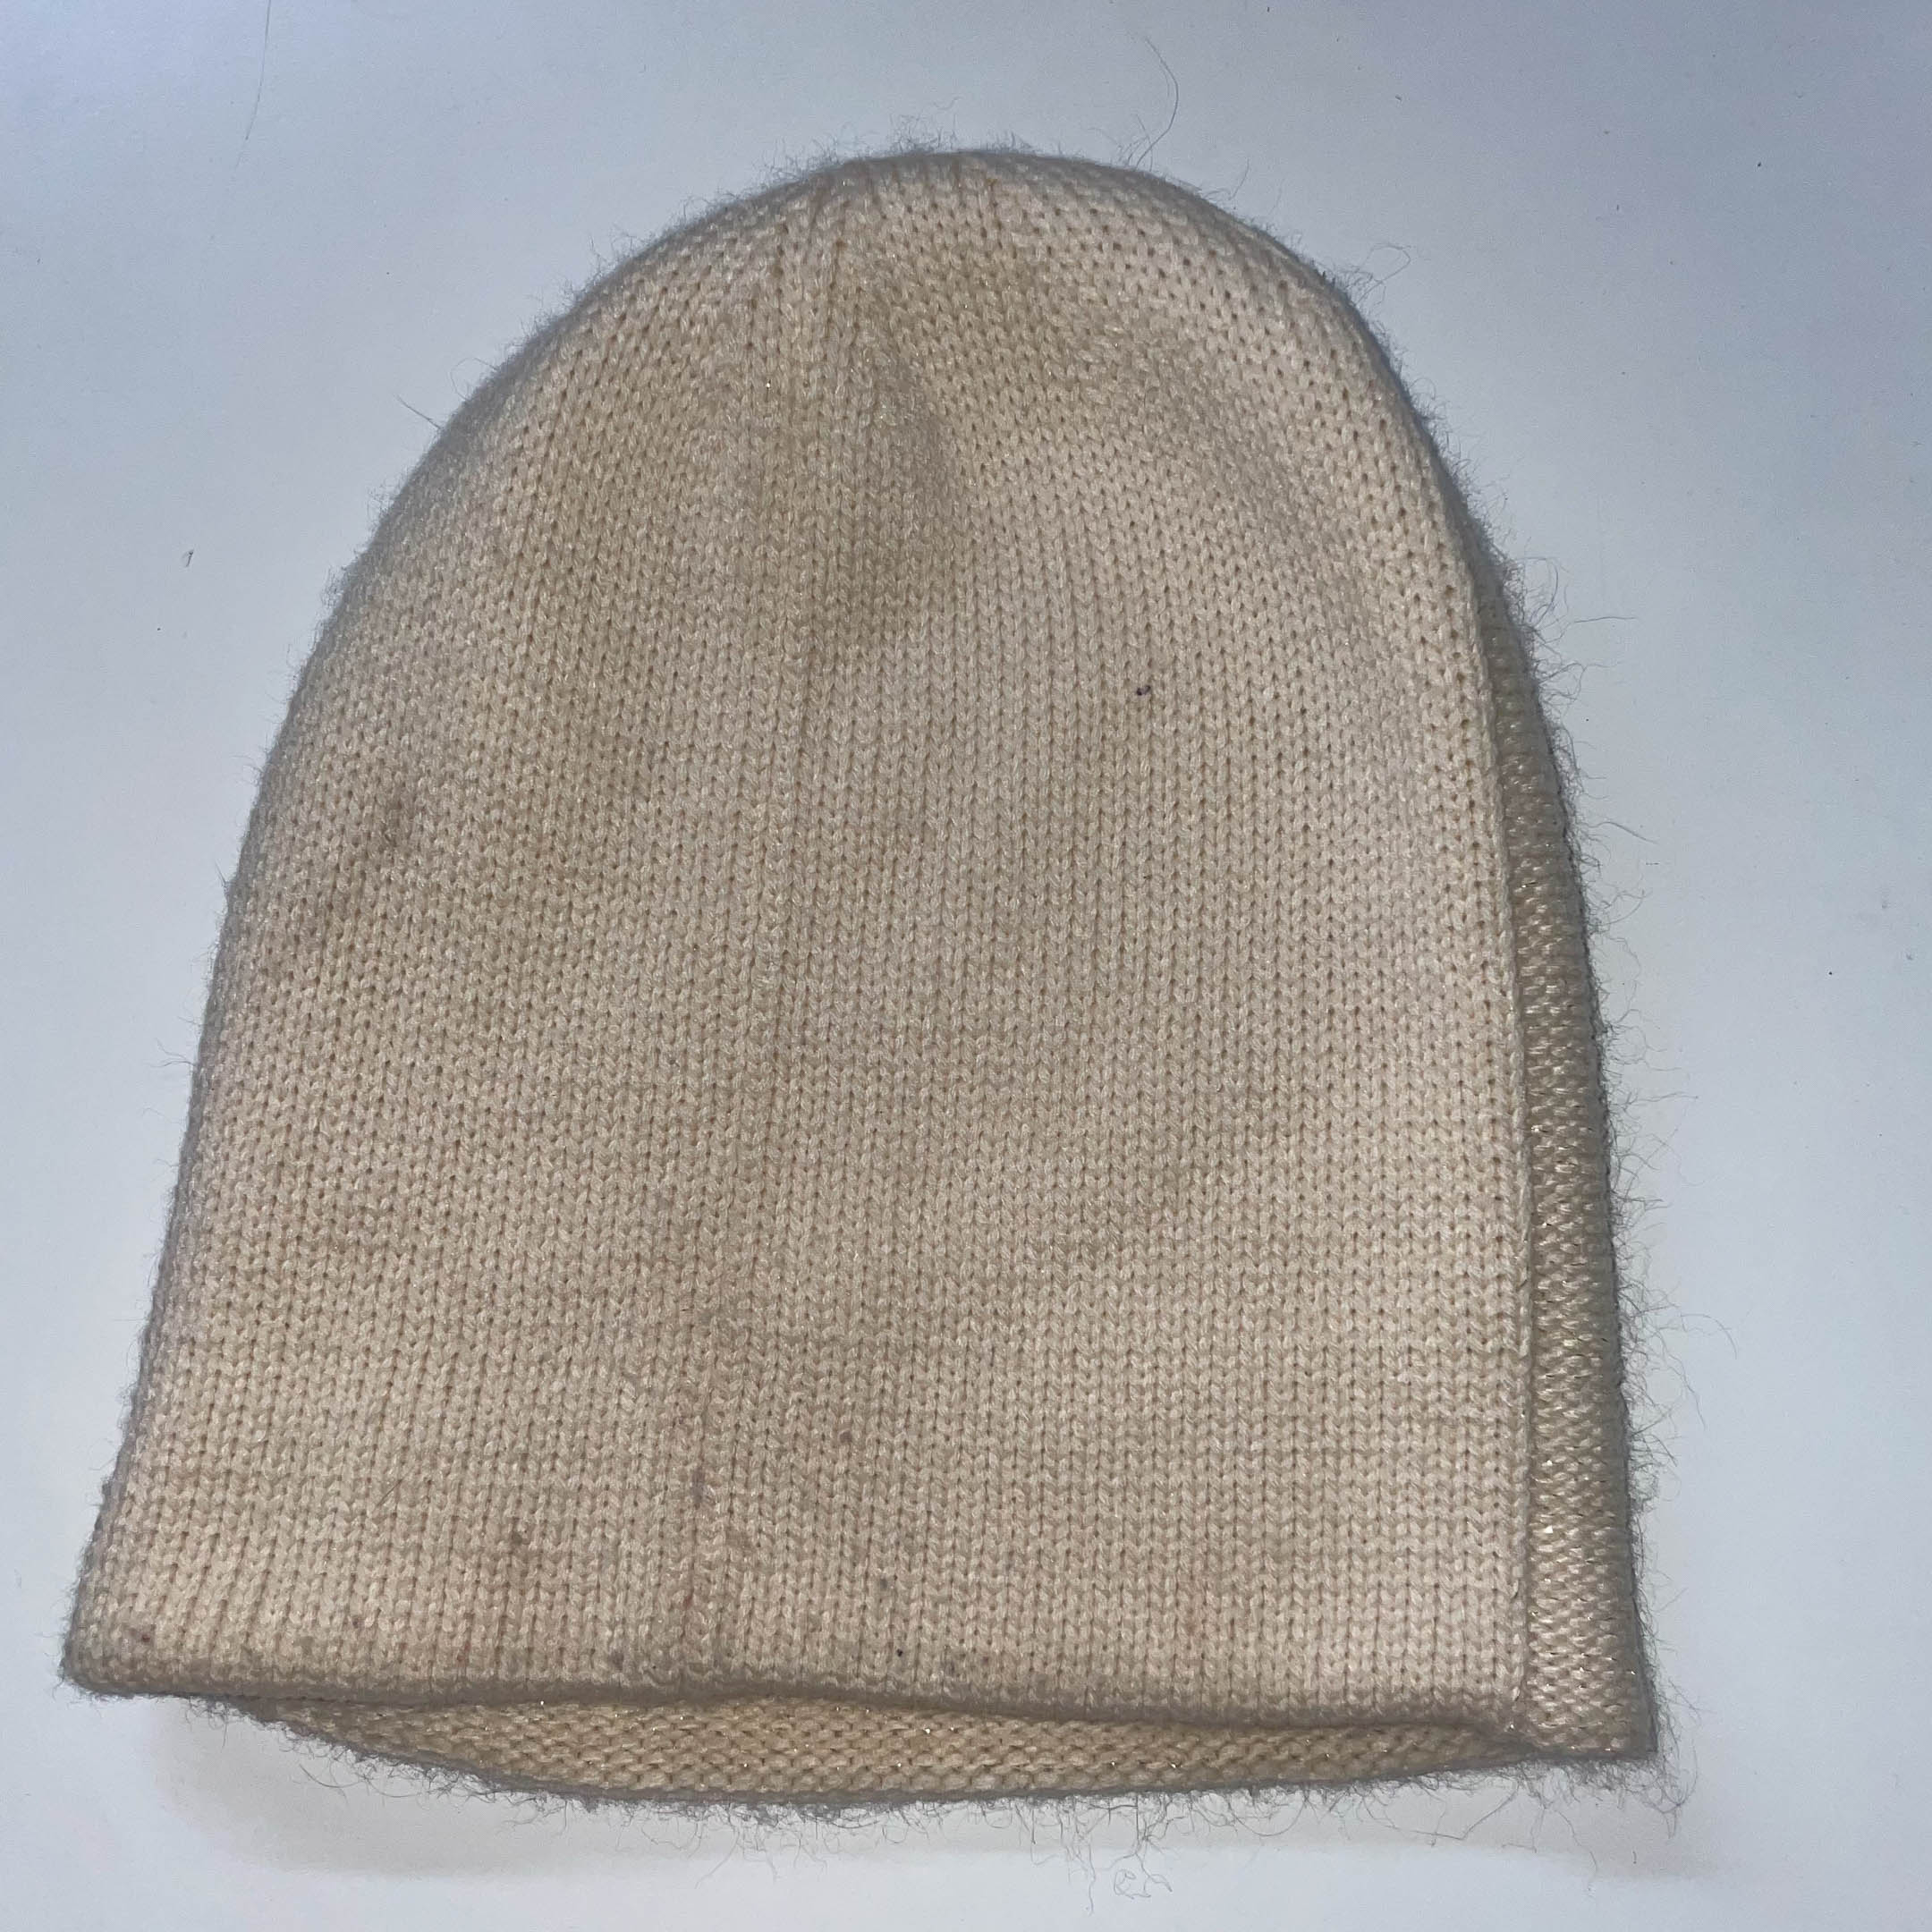 Vintage cream womens winter beanie hat